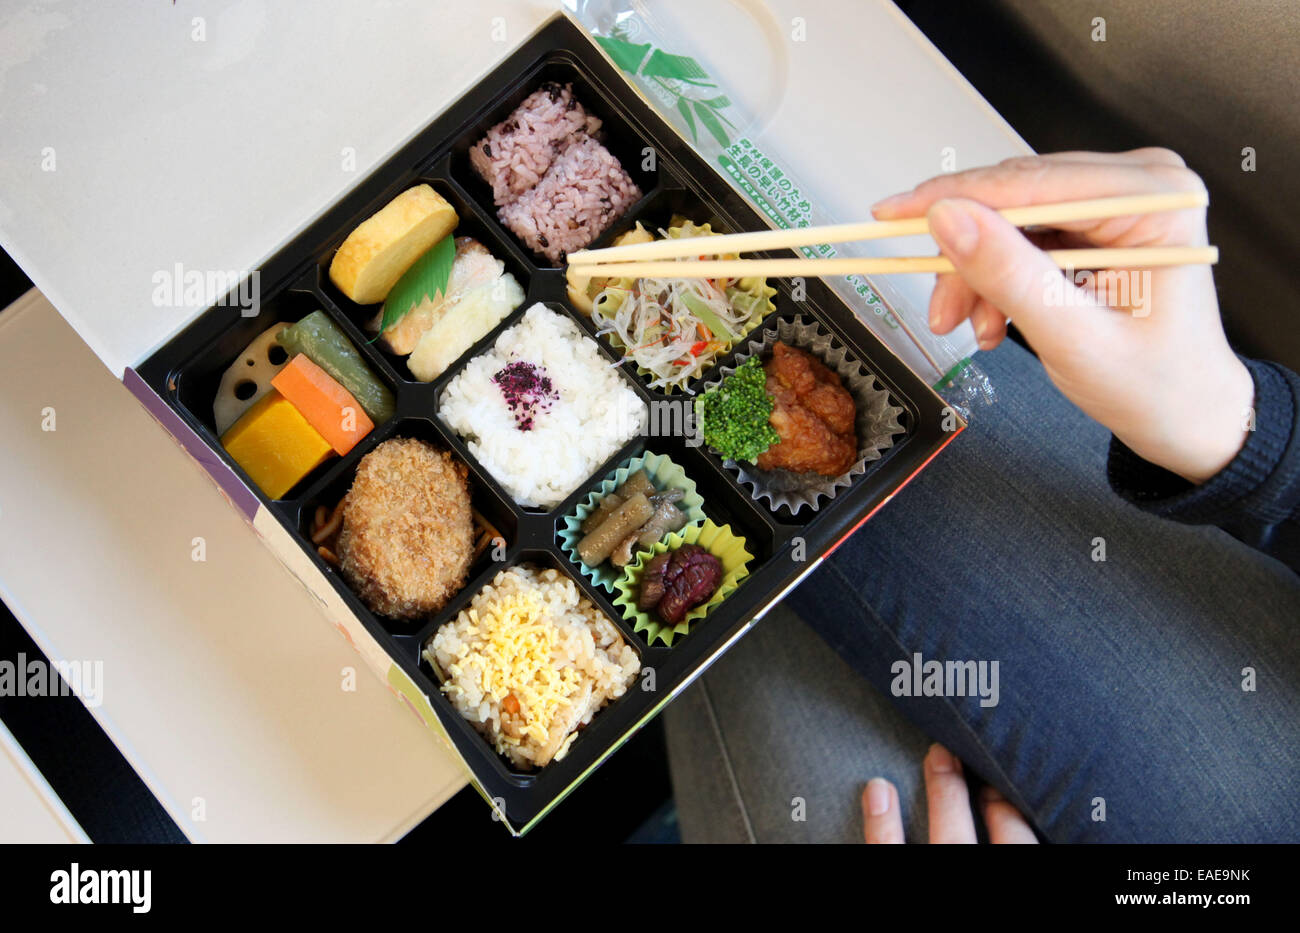 Une boîte bento (forme posologique) avec de la nourriture en photo à Kyoto, le 5 octobre 2014. Photo : Friso Gentsch/dpa Banque D'Images